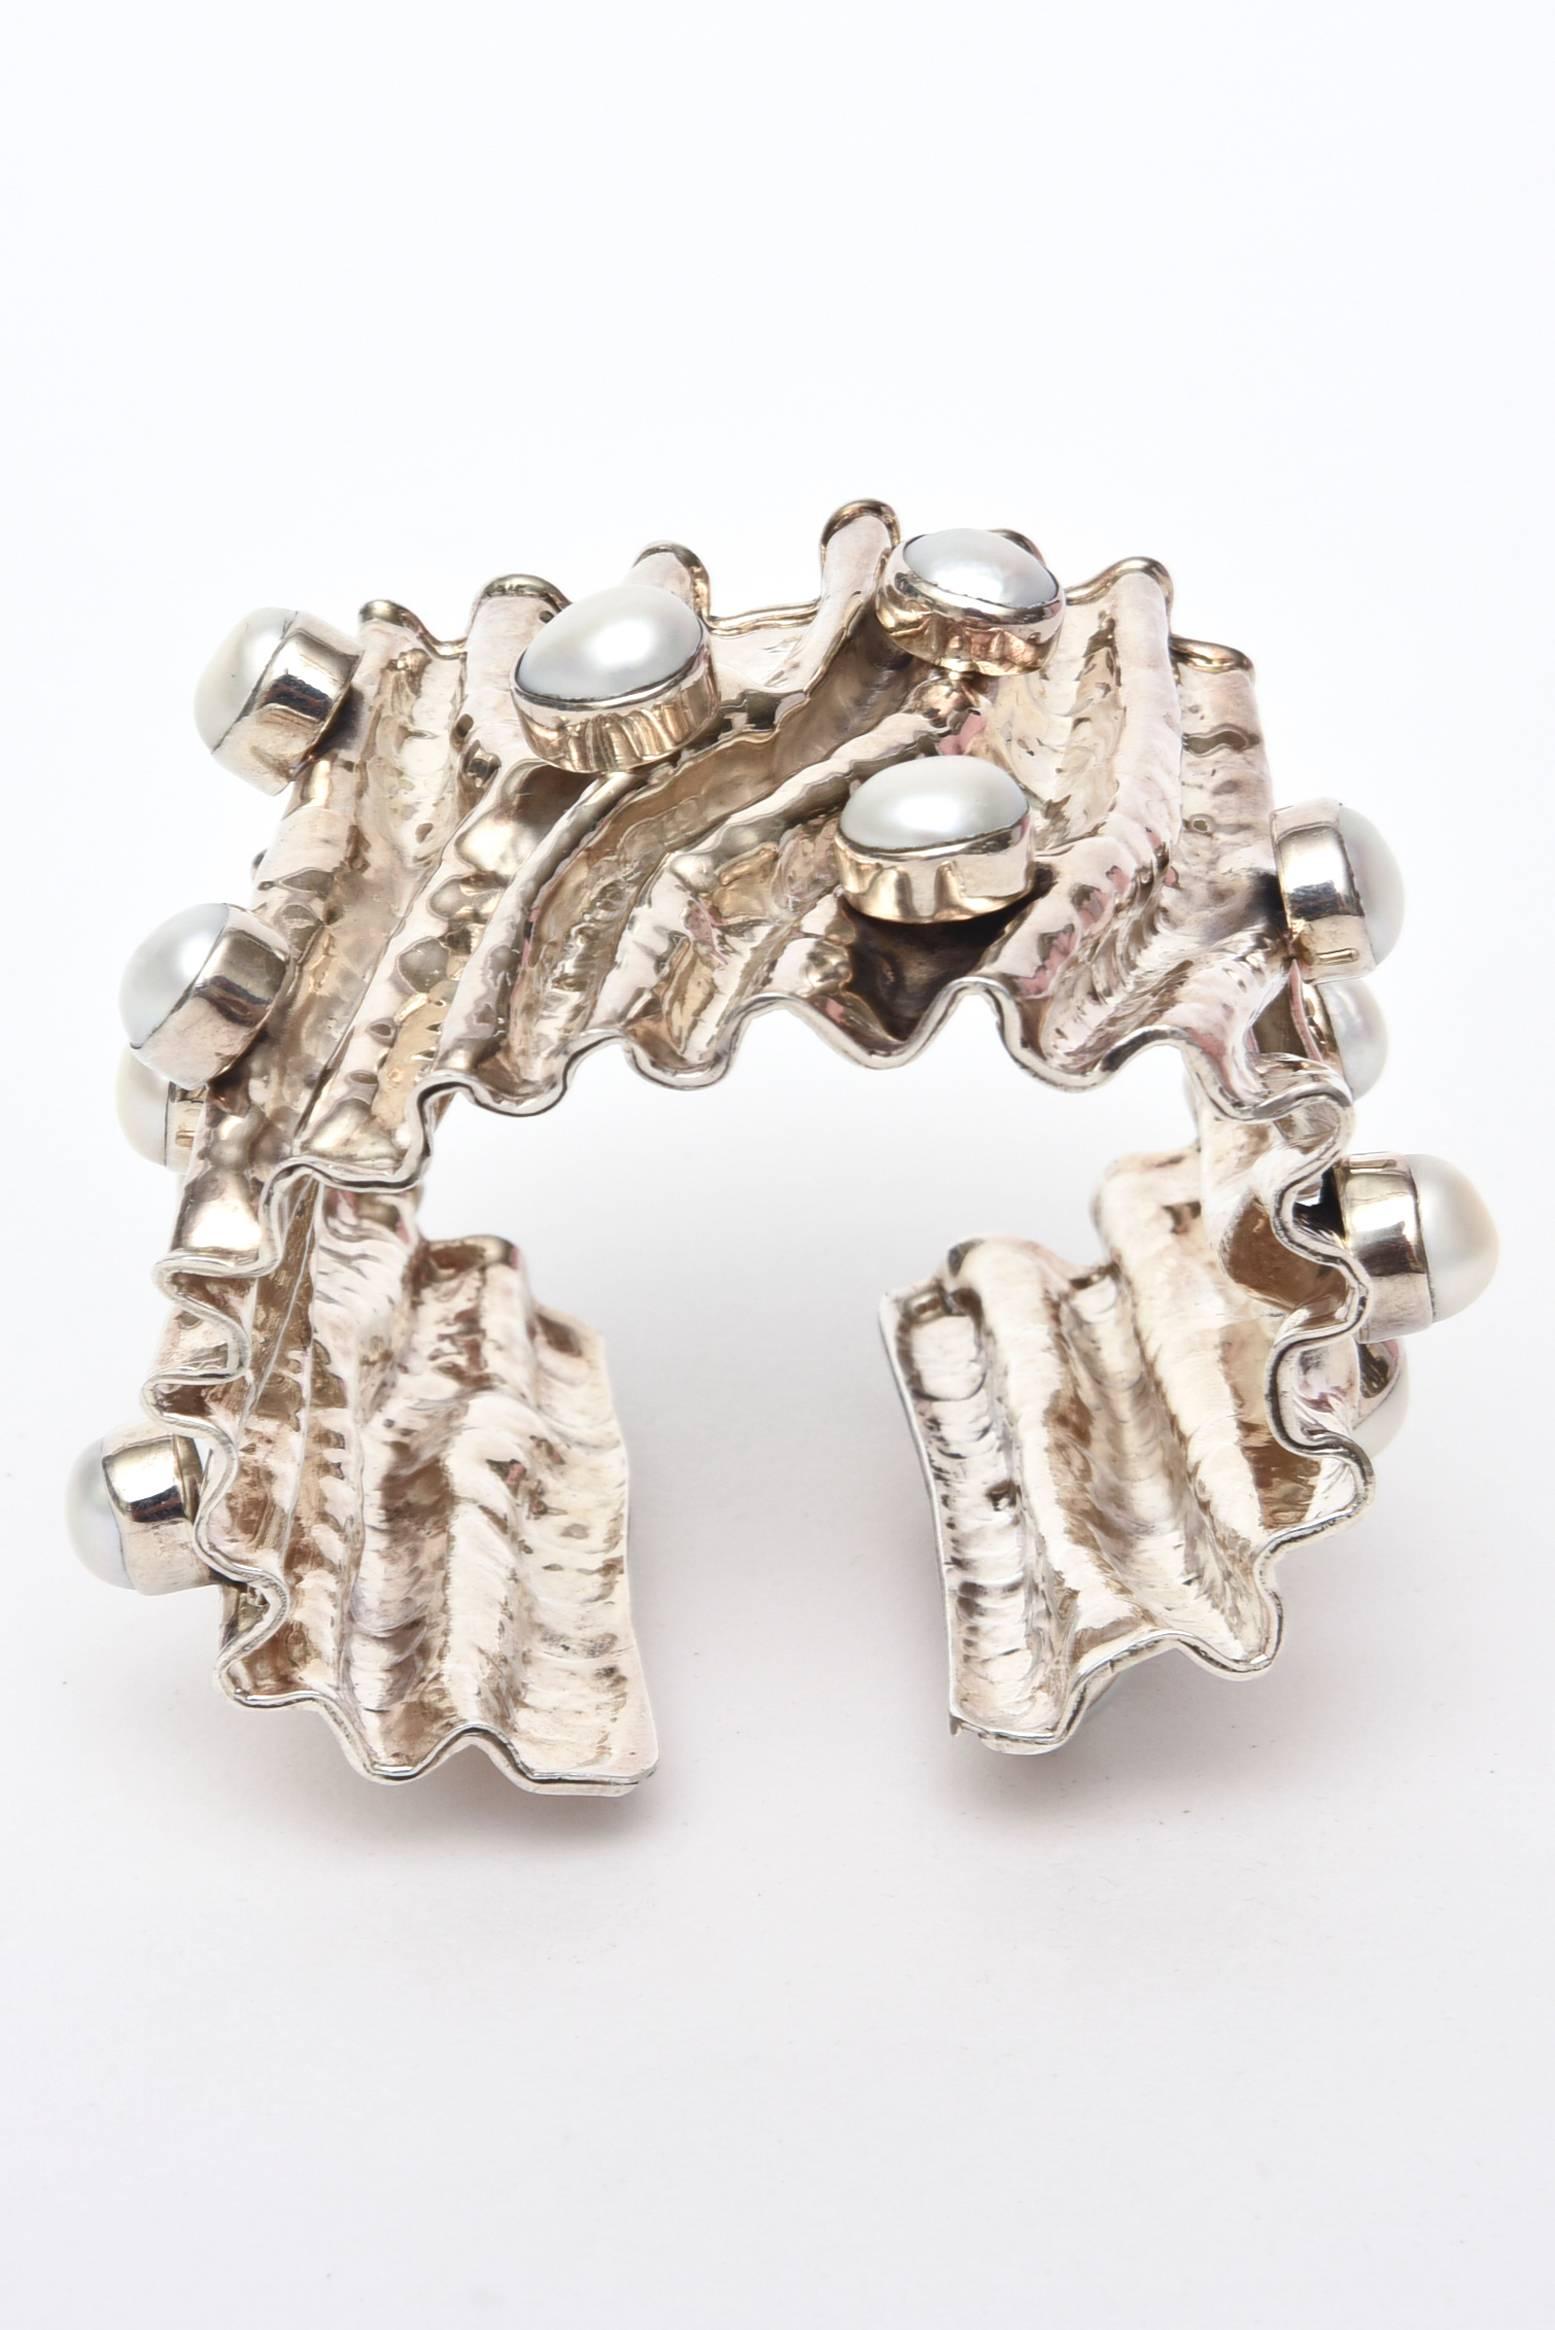 Cet étonnant et sculptural bracelet manchette en argent sterling forgé à la main est orné de 15 perles véritables serties dans une forme saillante, et l'argent semble avoir été plié et froissé. Il a un bon poids. Il est marqué 